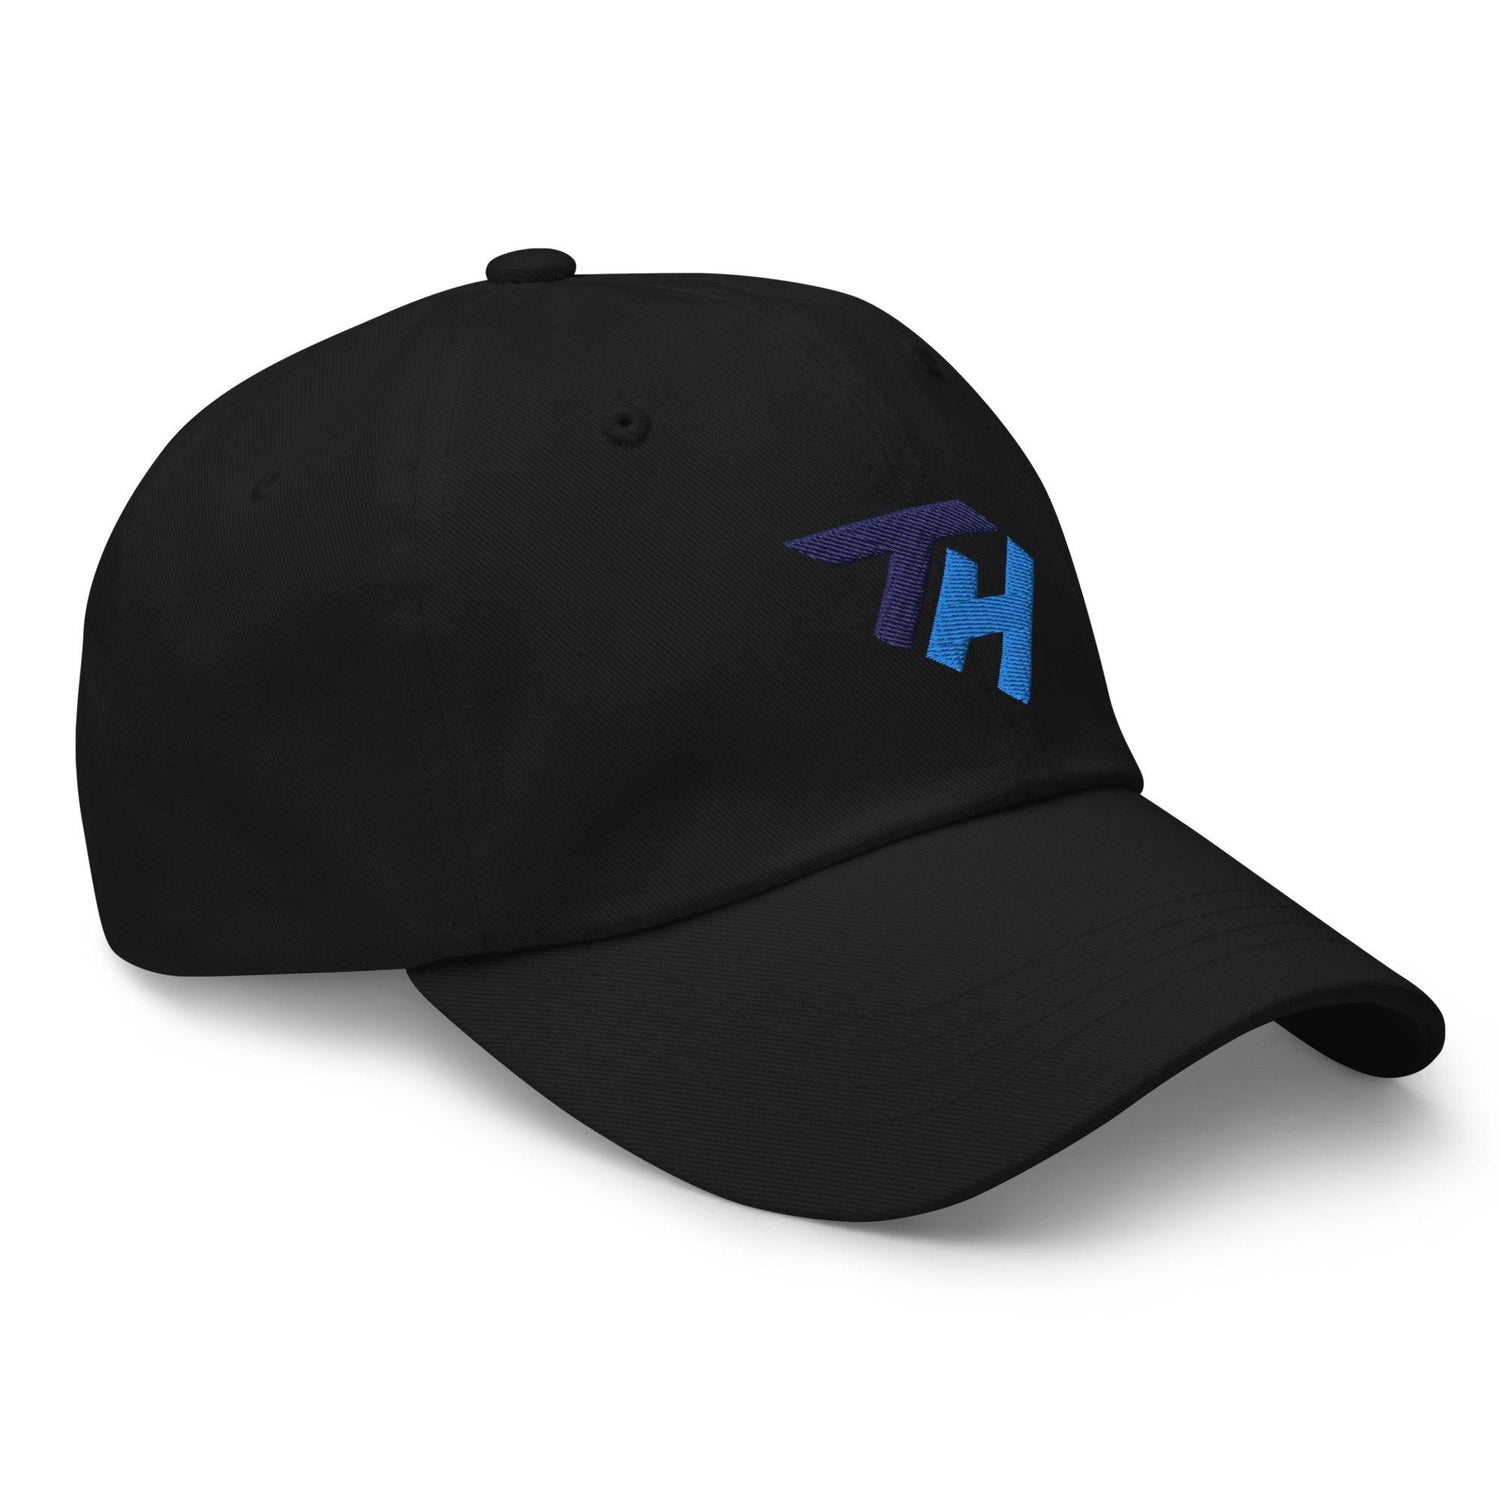 Timmy Herrin "Elite" hat - Fan Arch